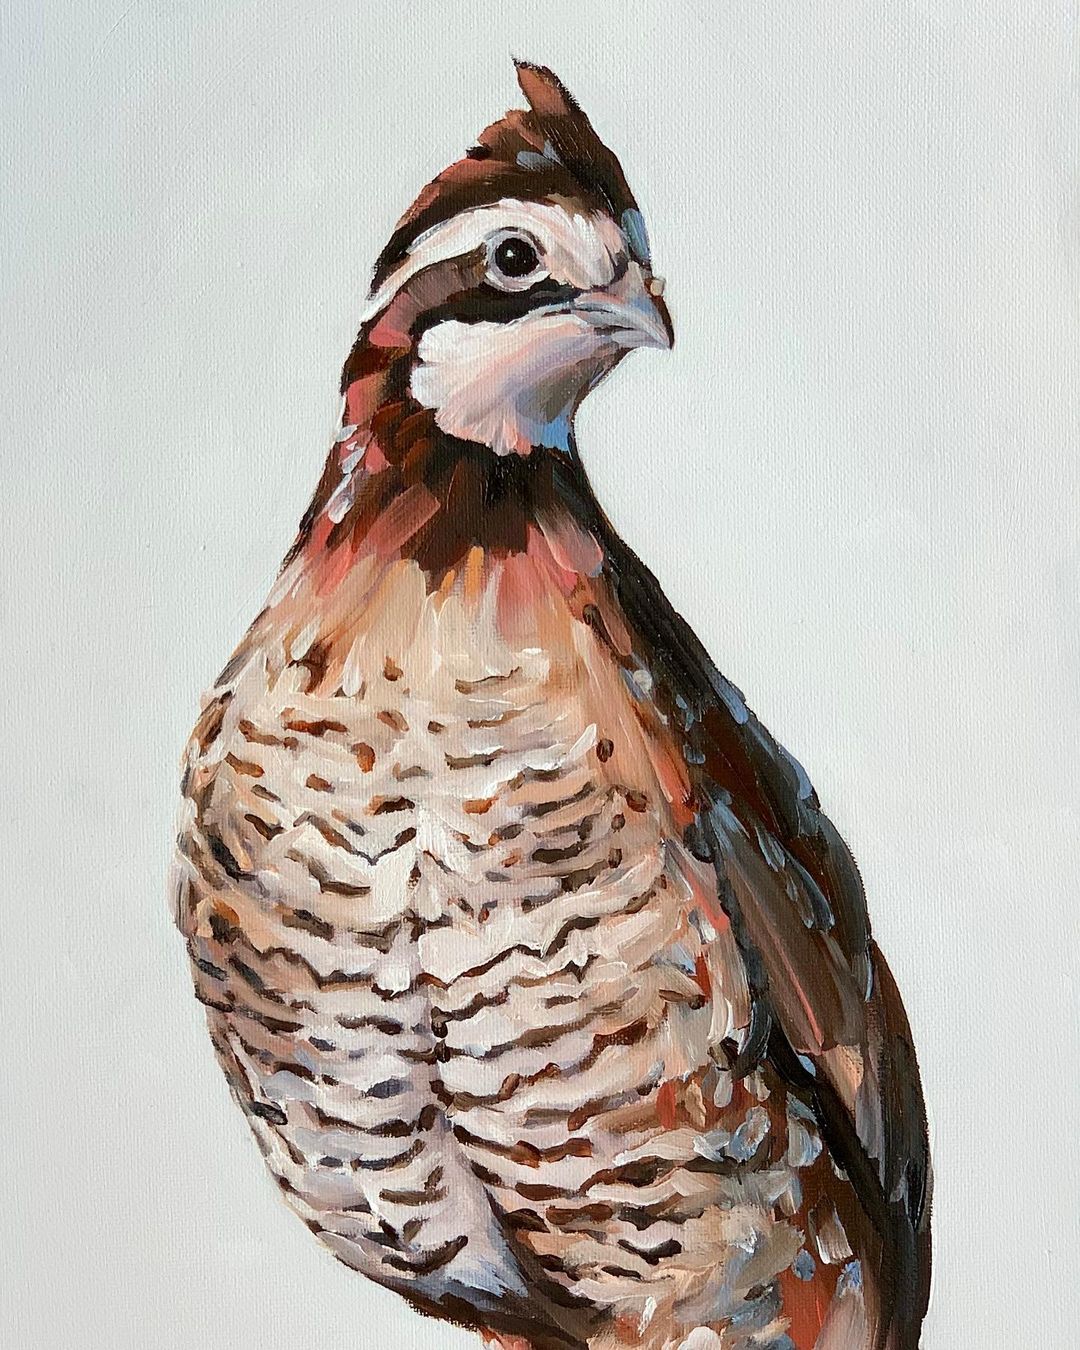 The Exquisite Bird Portrait Paintings Of Rachel Altschuler (26)